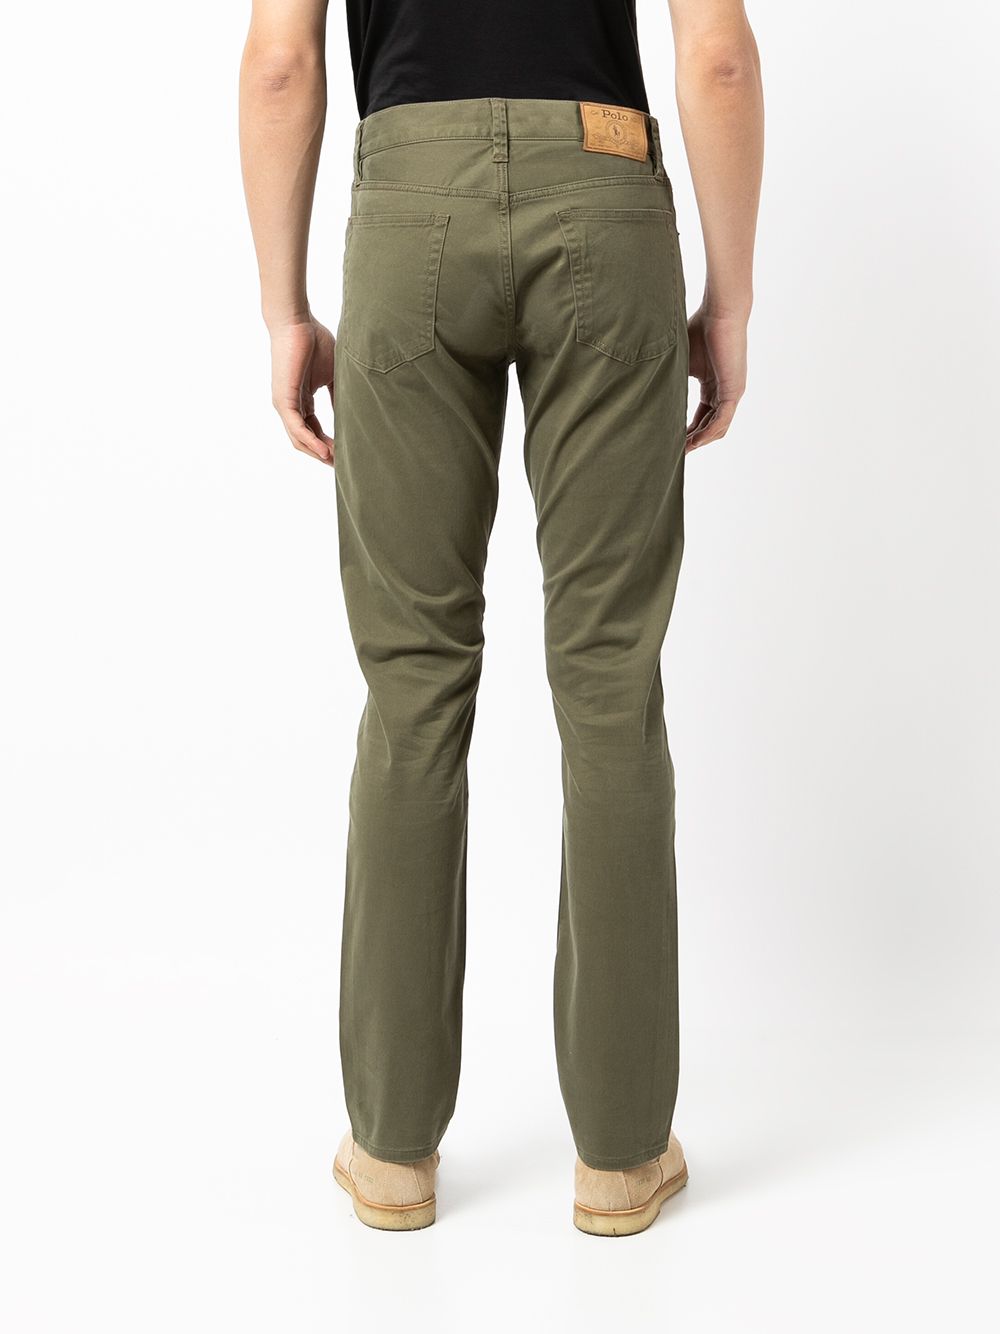 фото Polo ralph lauren прямые джинсы с пятью карманами